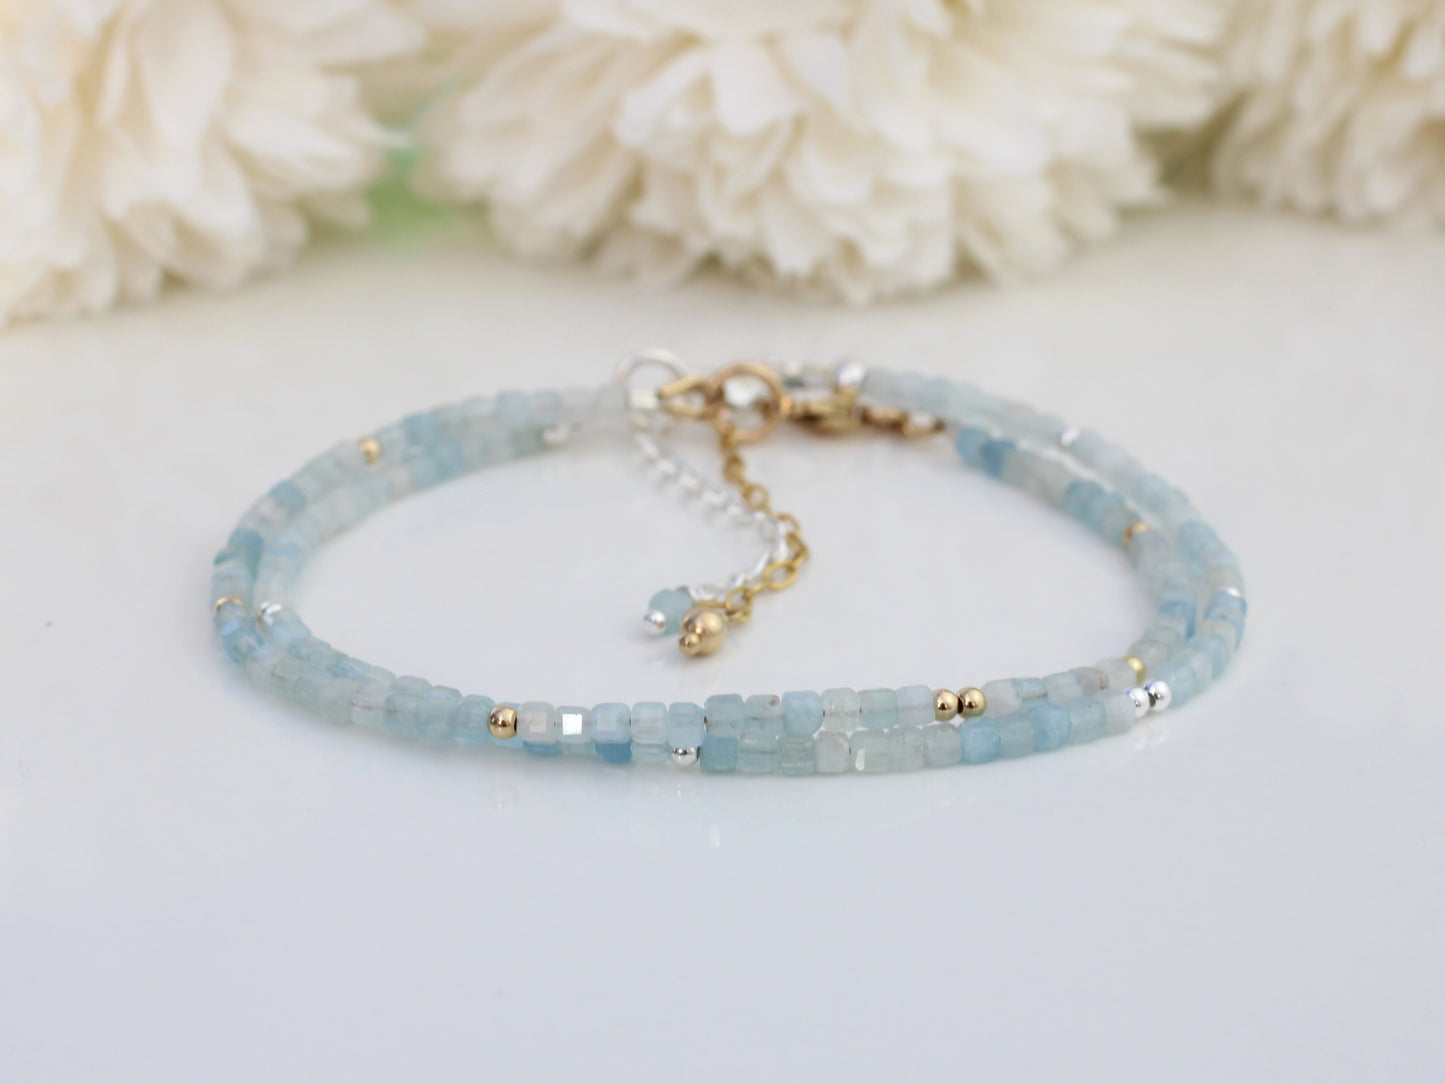 Skinny aquamarine bracelet in silver or gold.